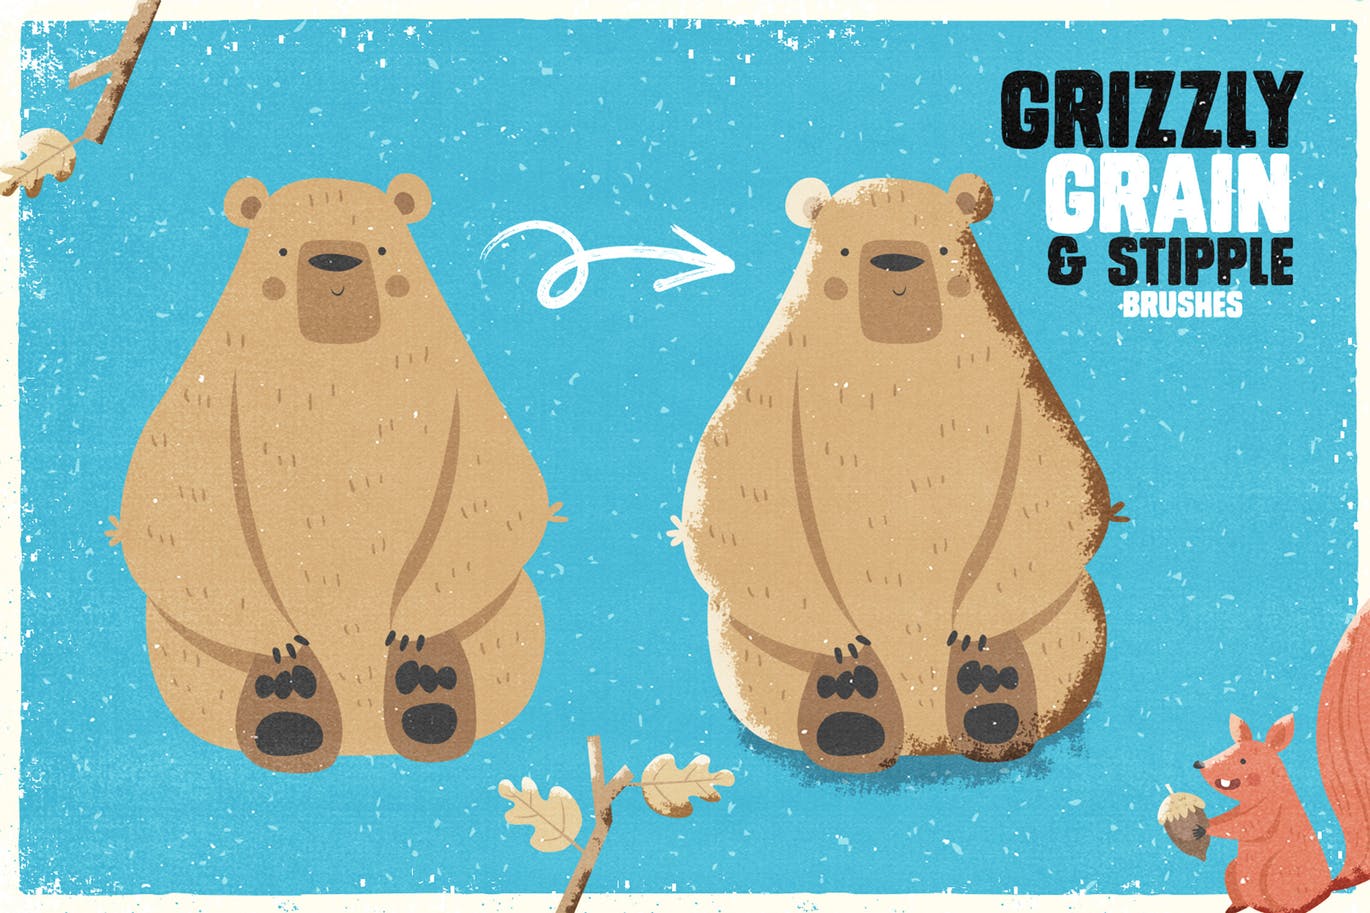 手绘设计师必备-流行的仿旧阴影效果点画创作PS笔刷蚂蚁素材精选 Grizzly Grain & Stipple Shader Brushes插图(1)